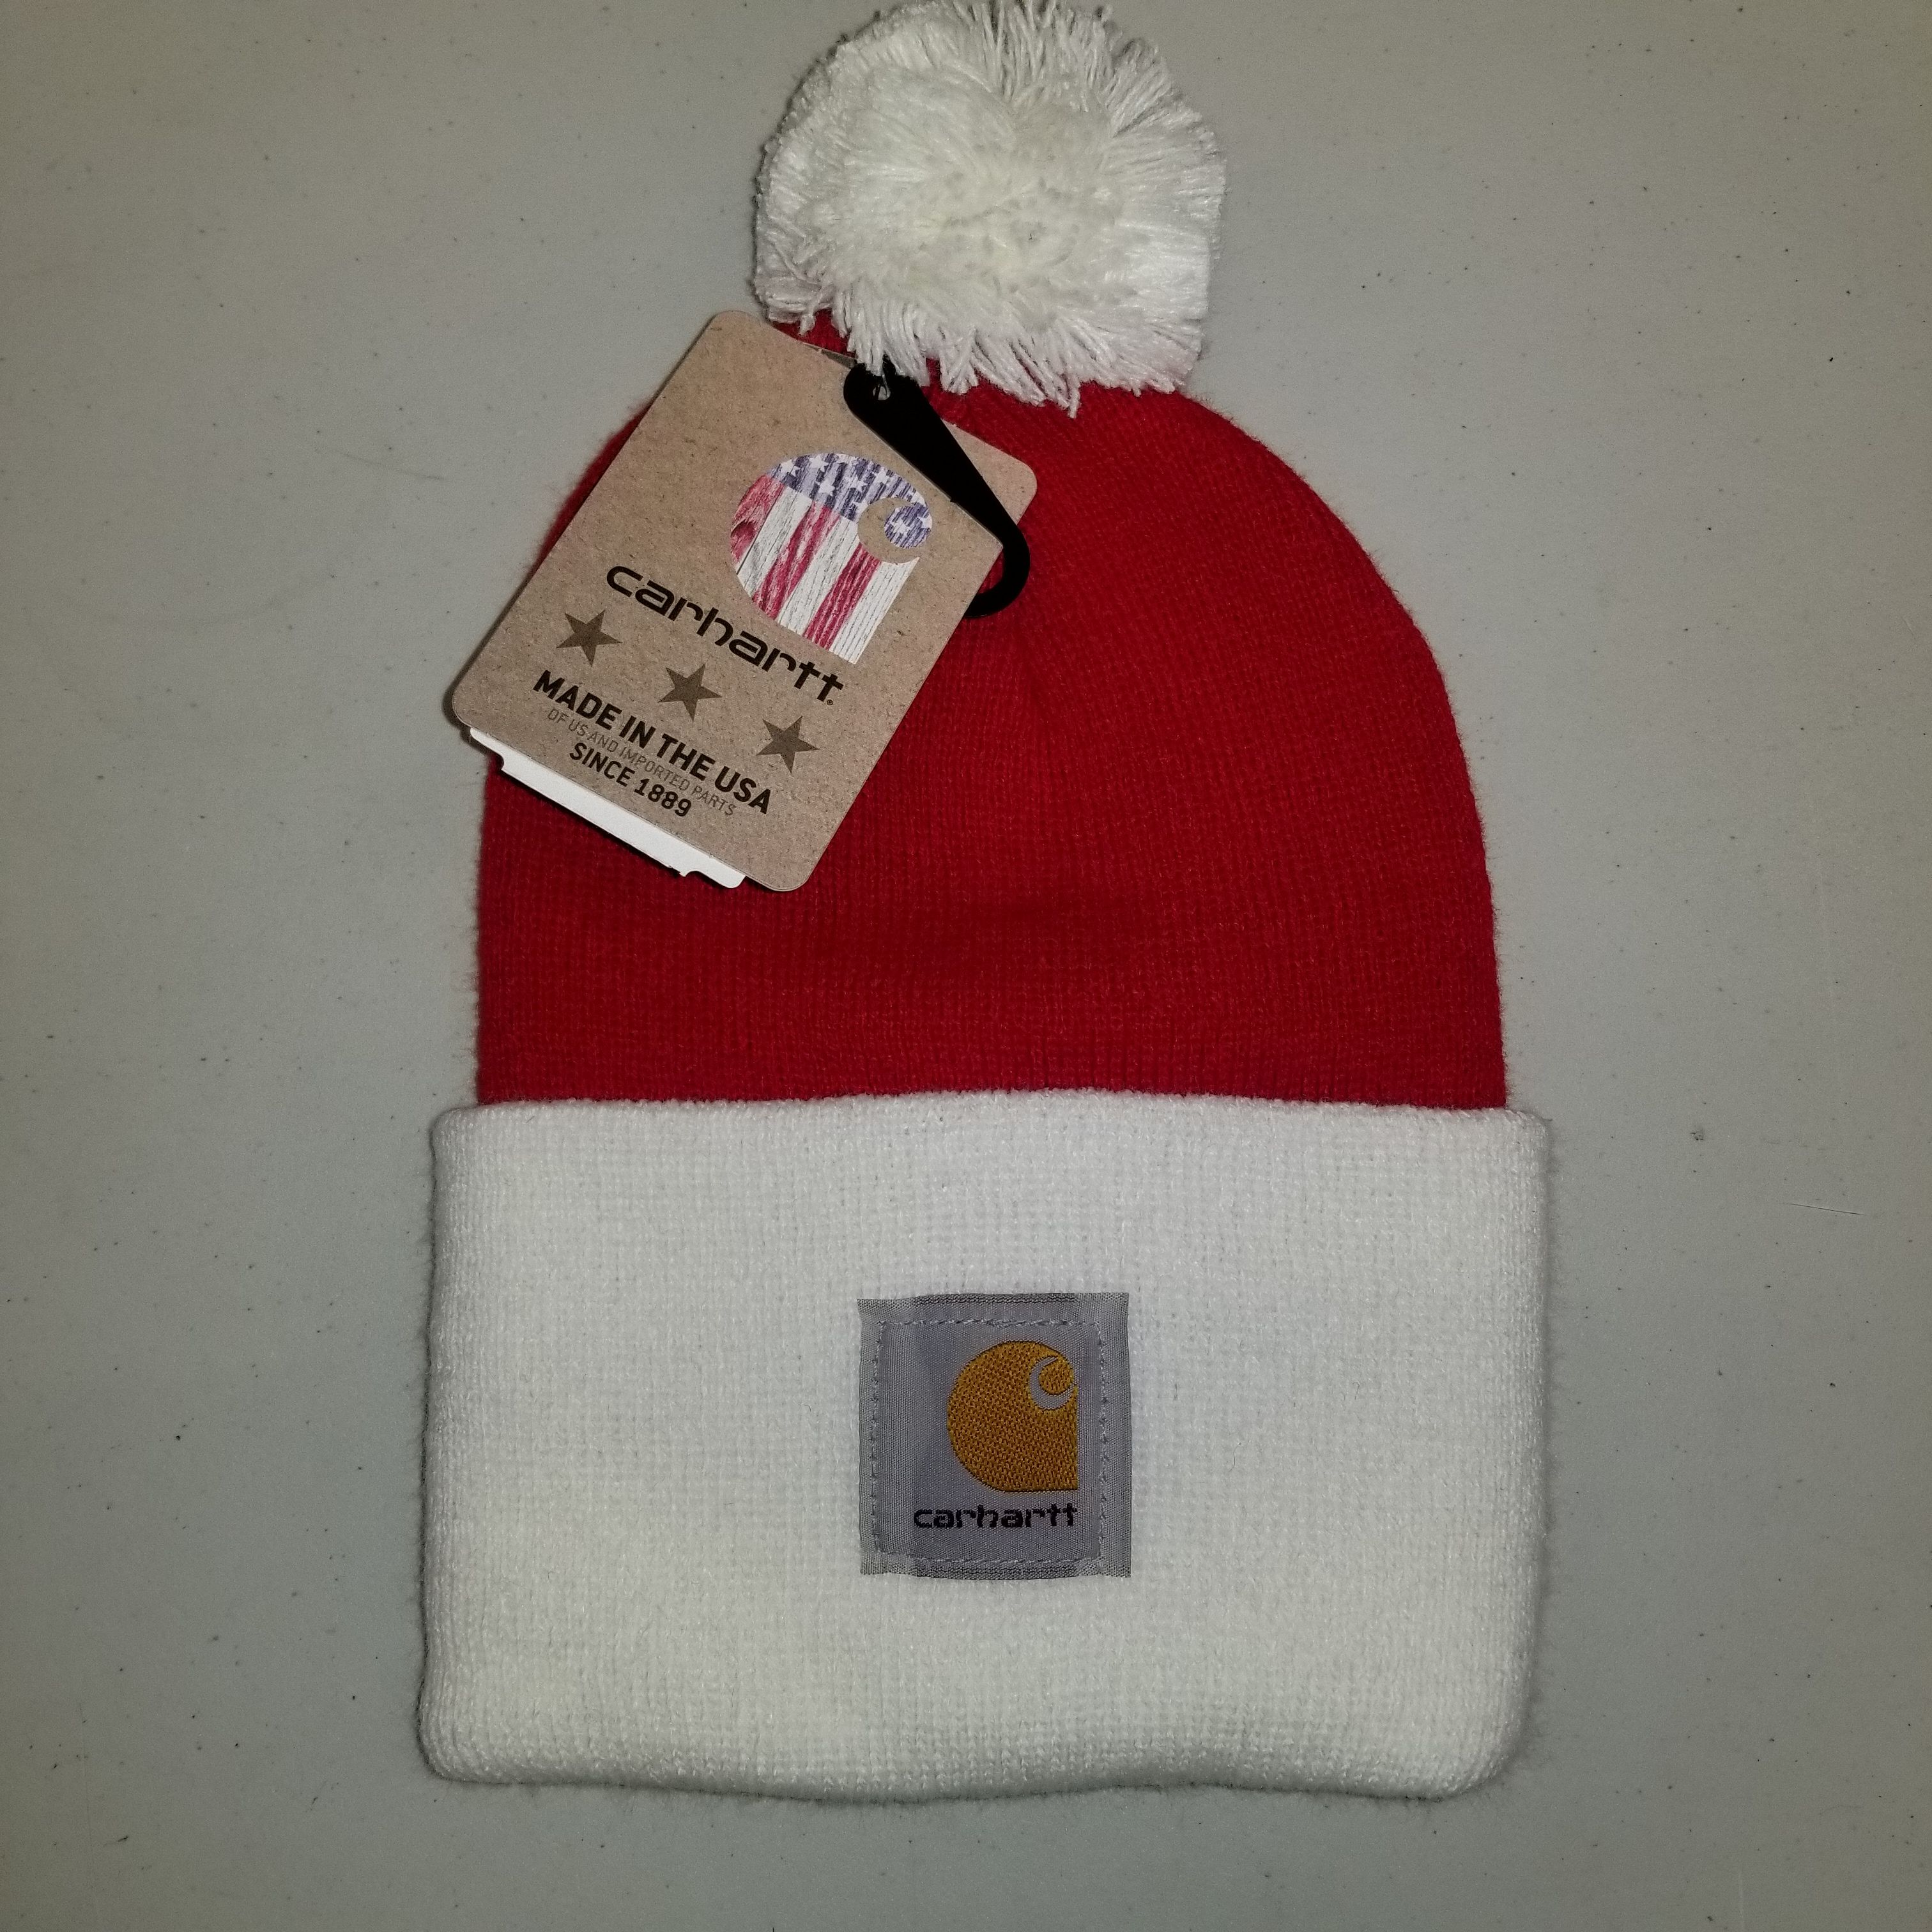 slutpunkt Afgørelse let at blive såret Carhartt Santa Acrylic Christmas Watch Hat for Sale in Cleveland, OH -  OfferUp